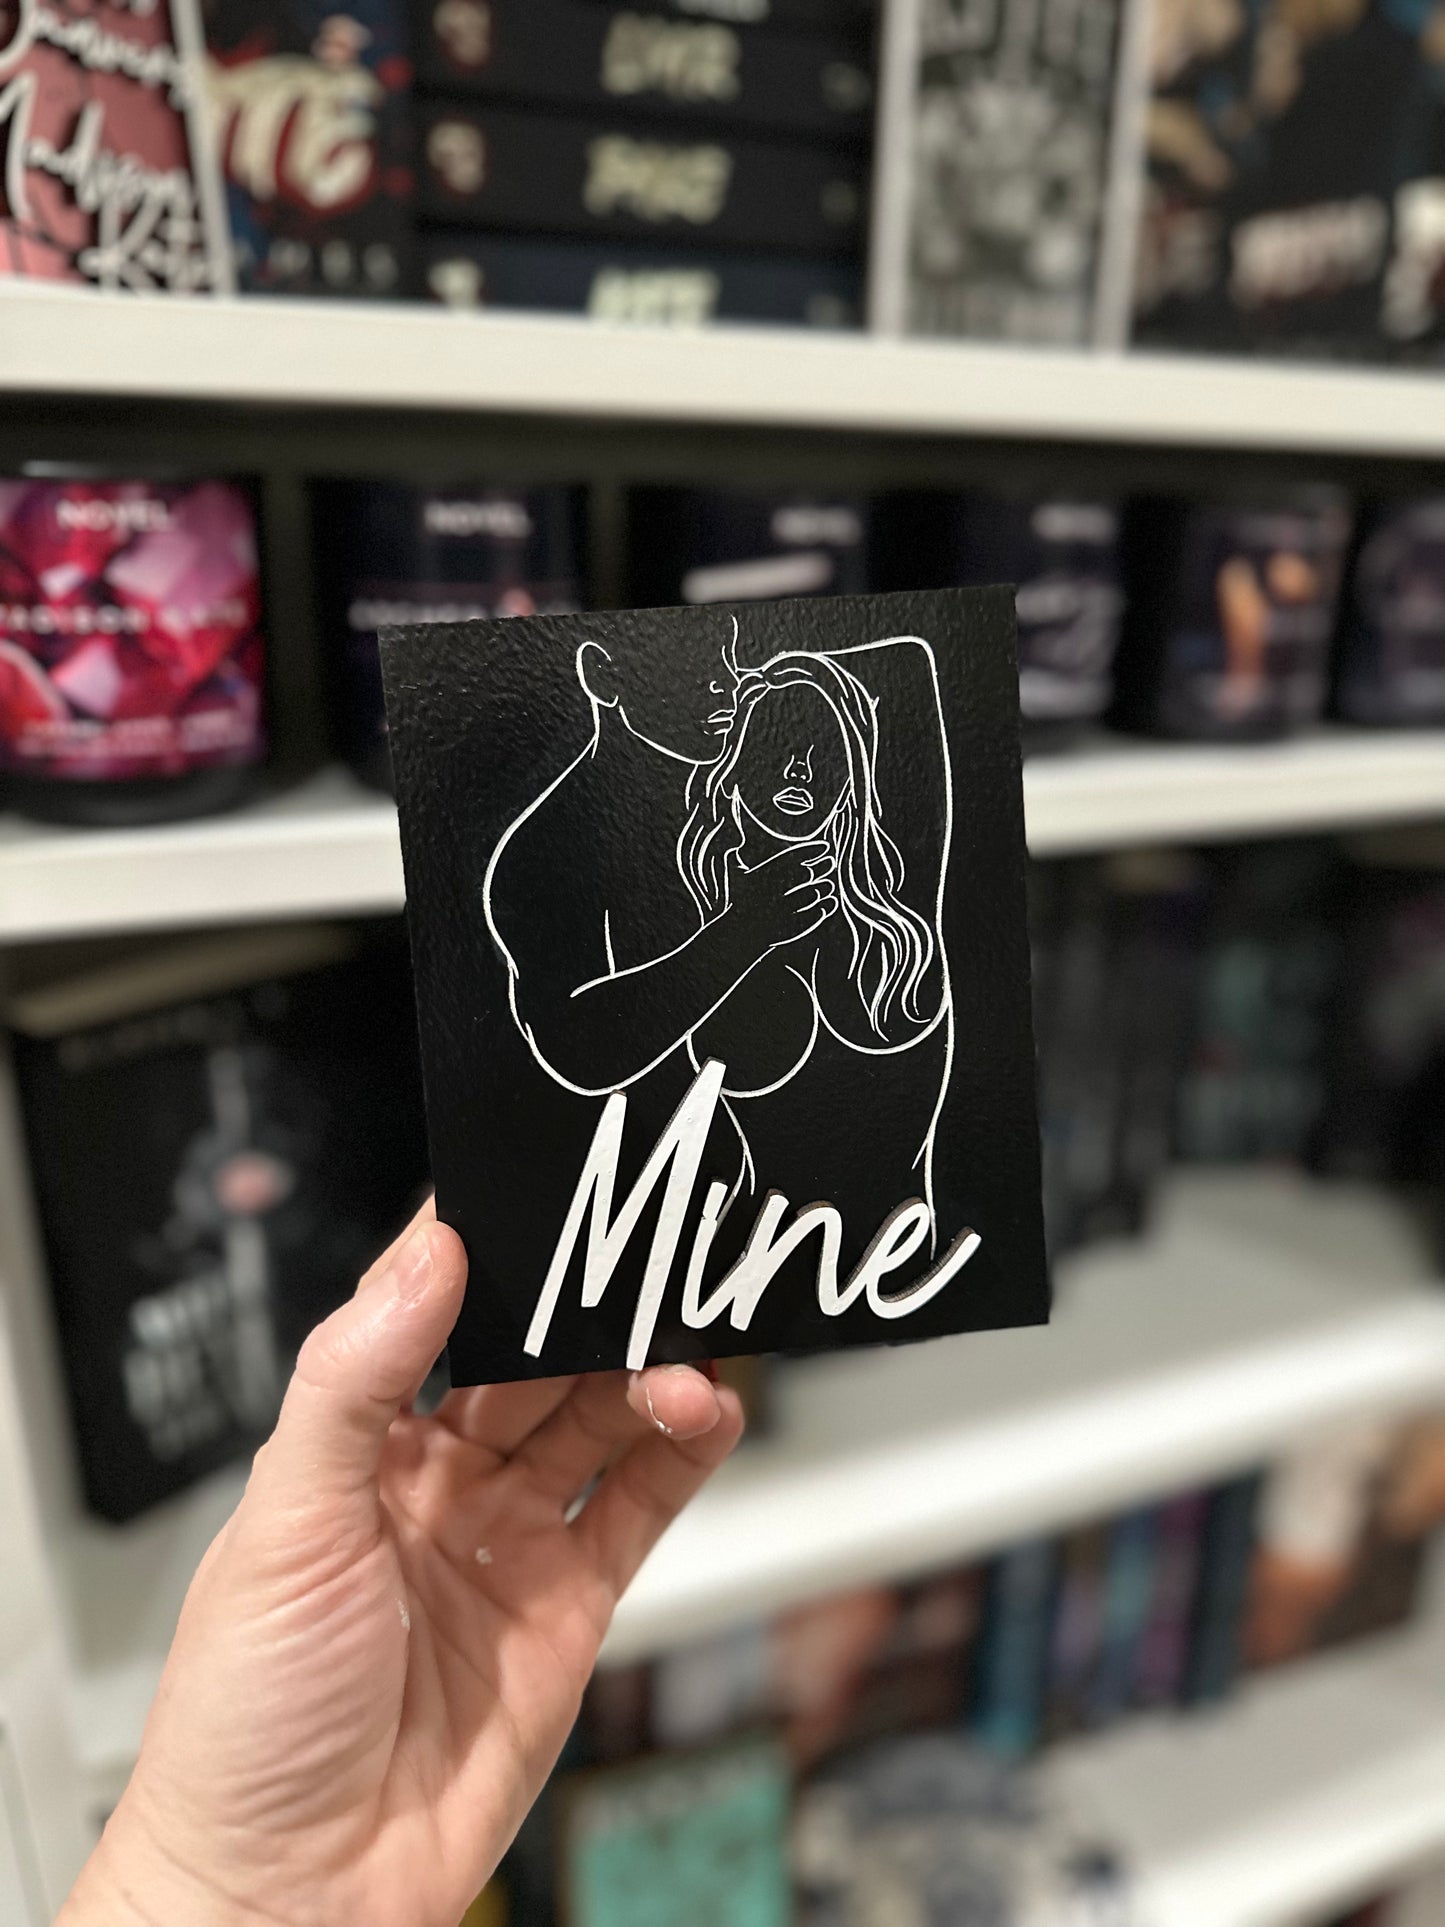 NSFW - "Mine" Shelf Sign